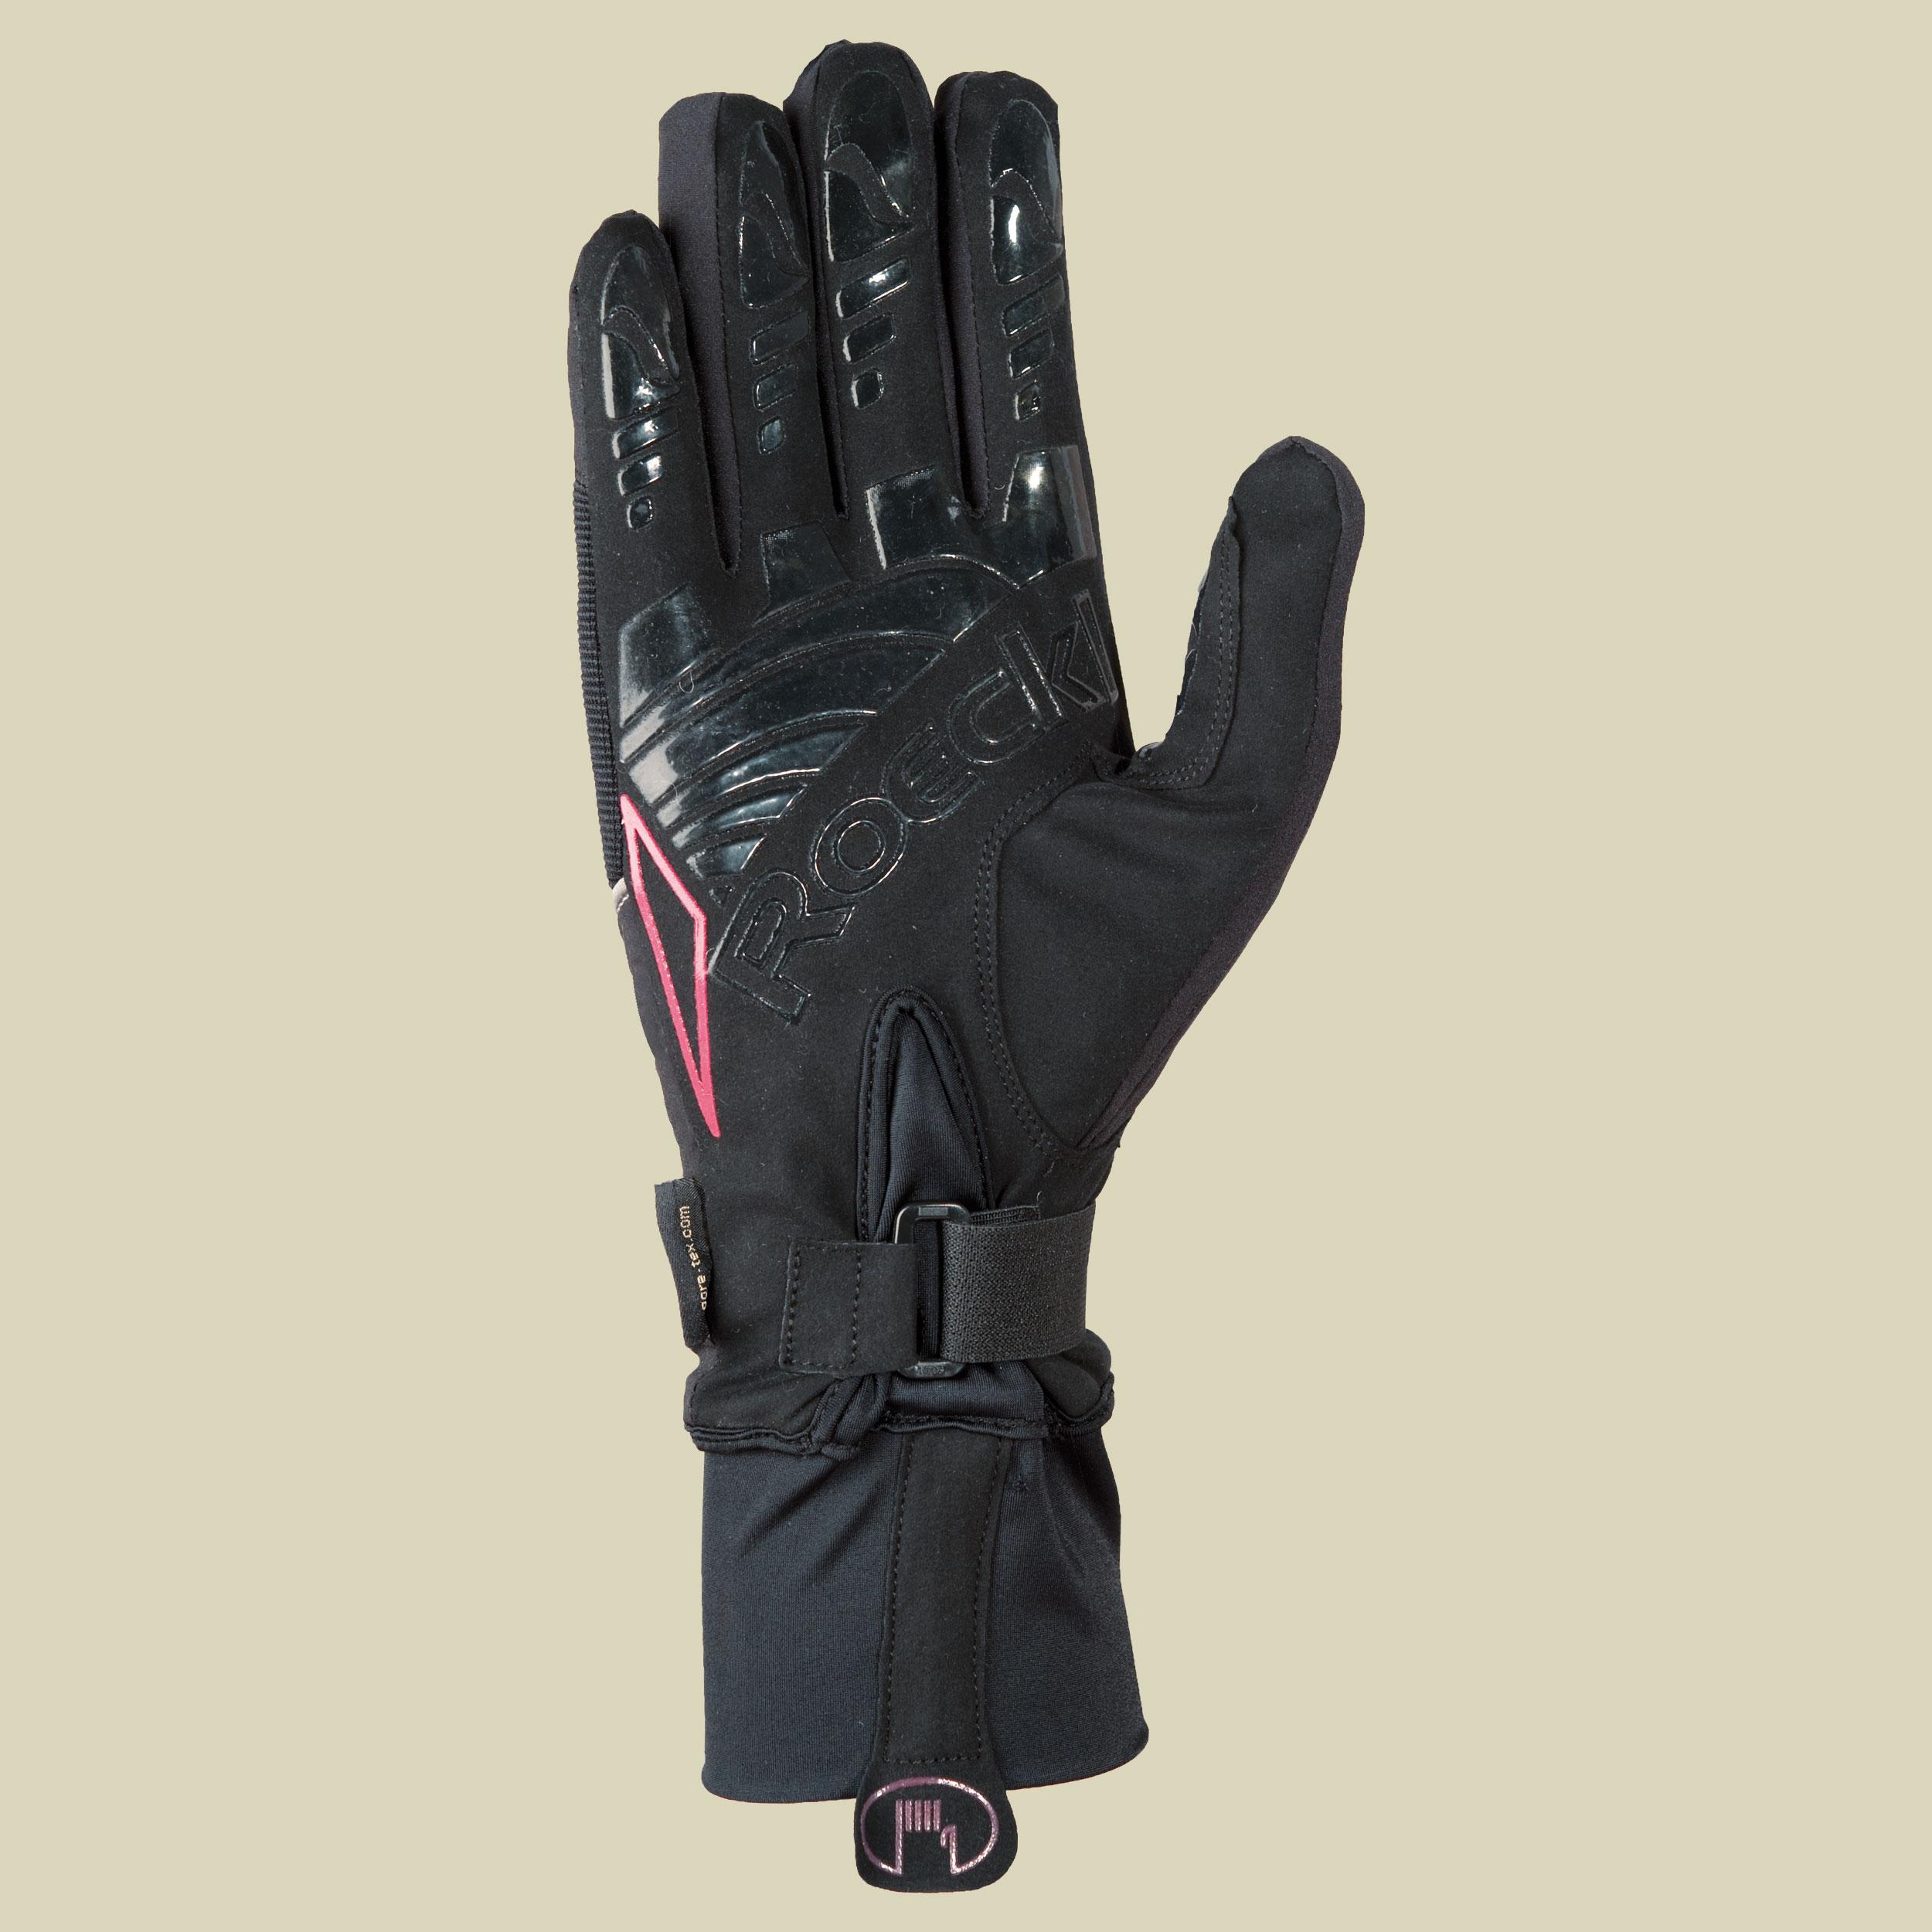 Kasbek GTX Multisport Handschuh Größe 8 Farbe schwarz